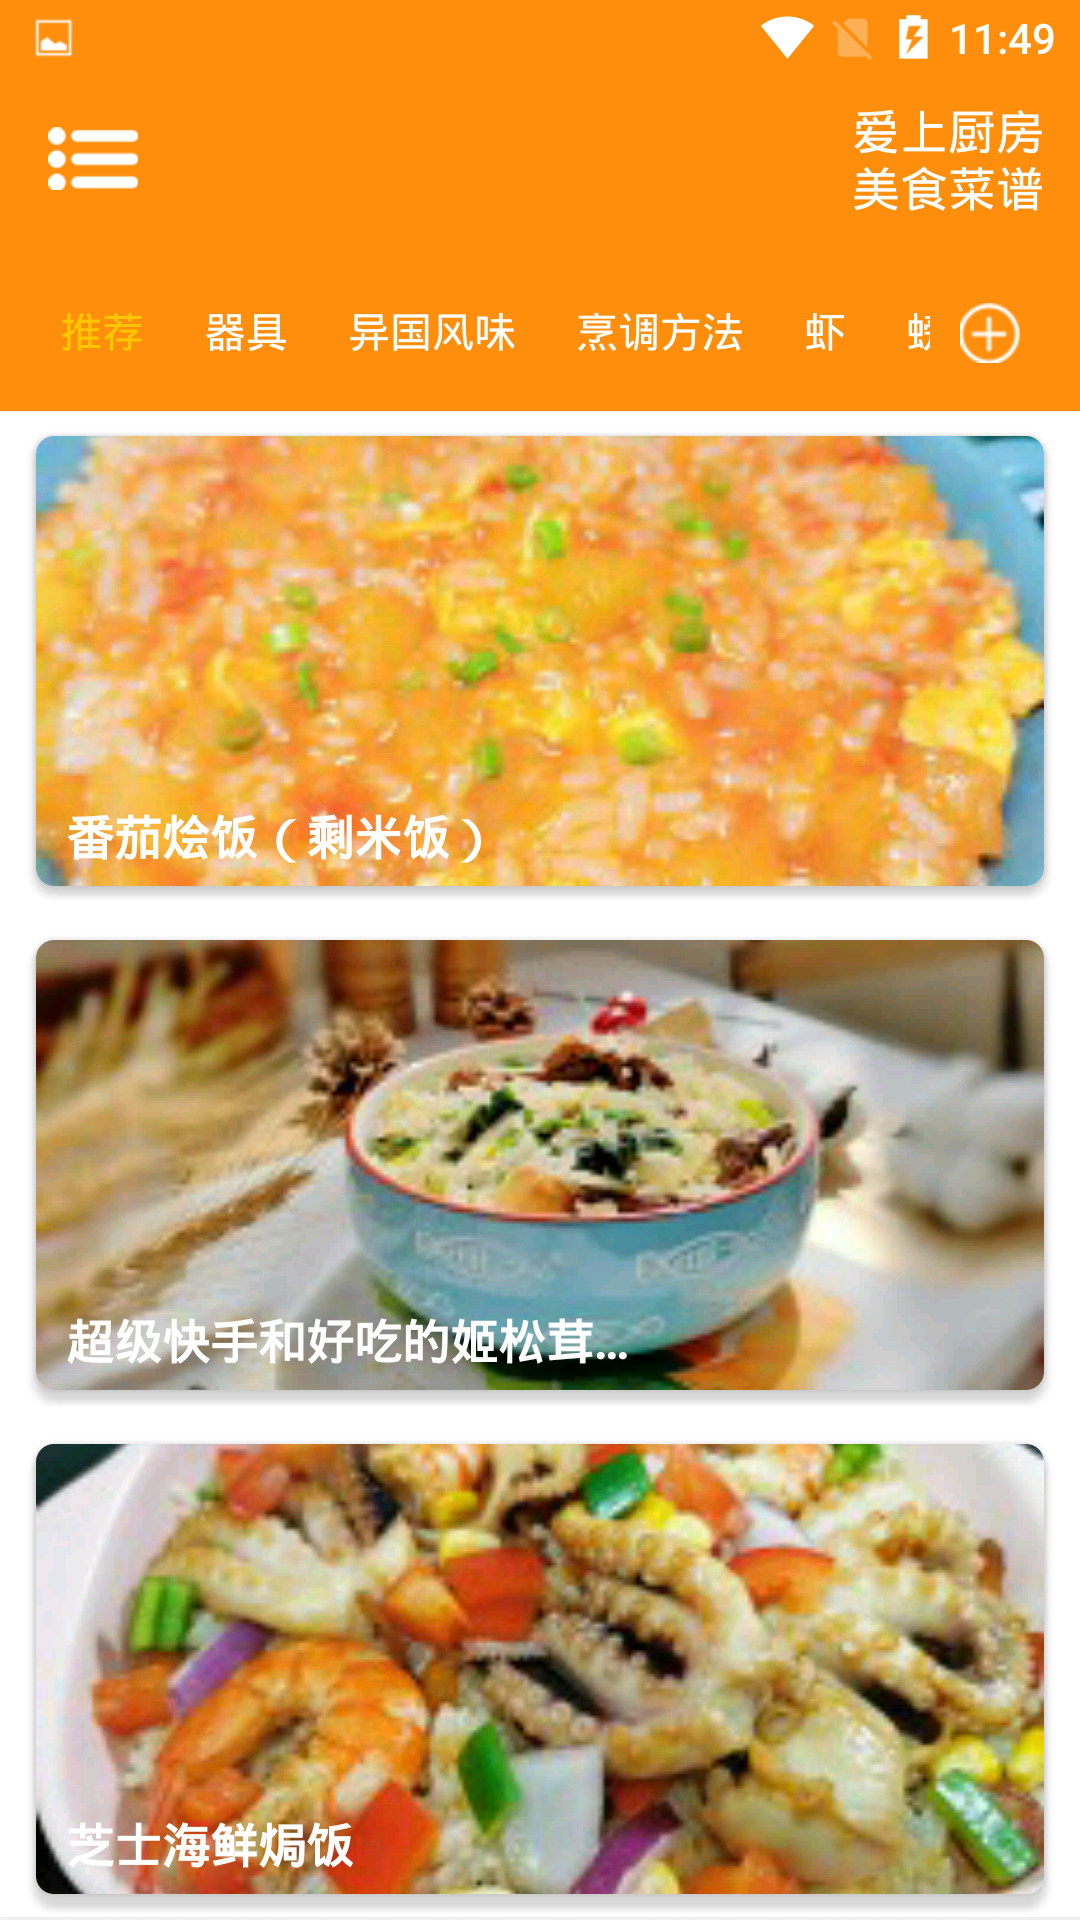 爱上厨房美食菜谱App下载 1.0.6 截图2